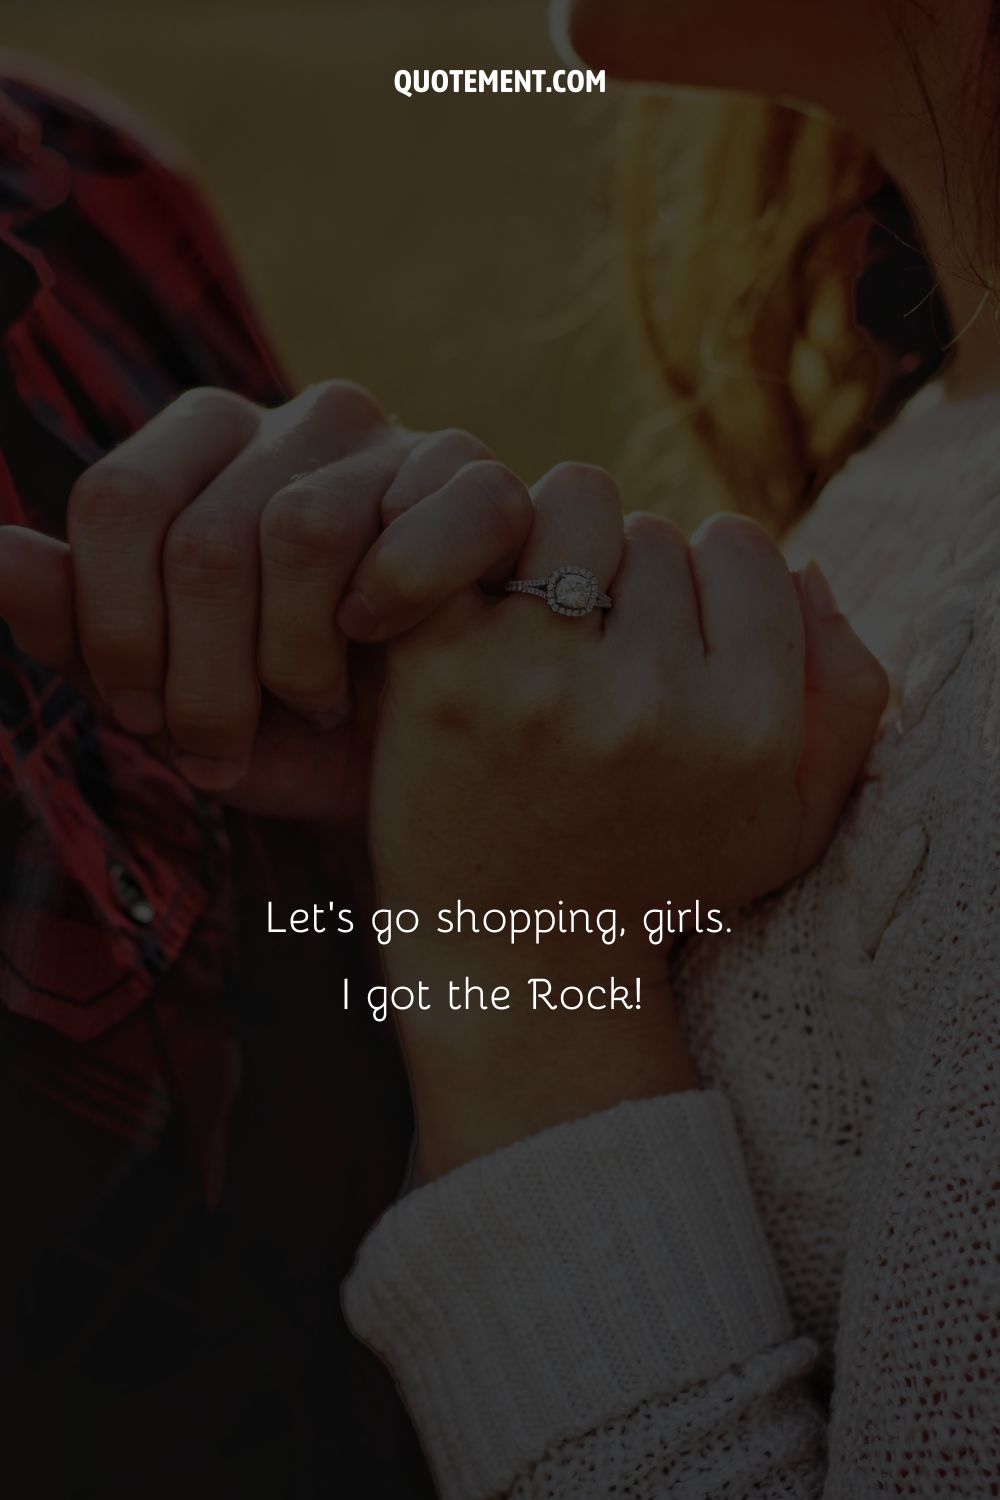 Let’s go shopping, girls. I got the Rock